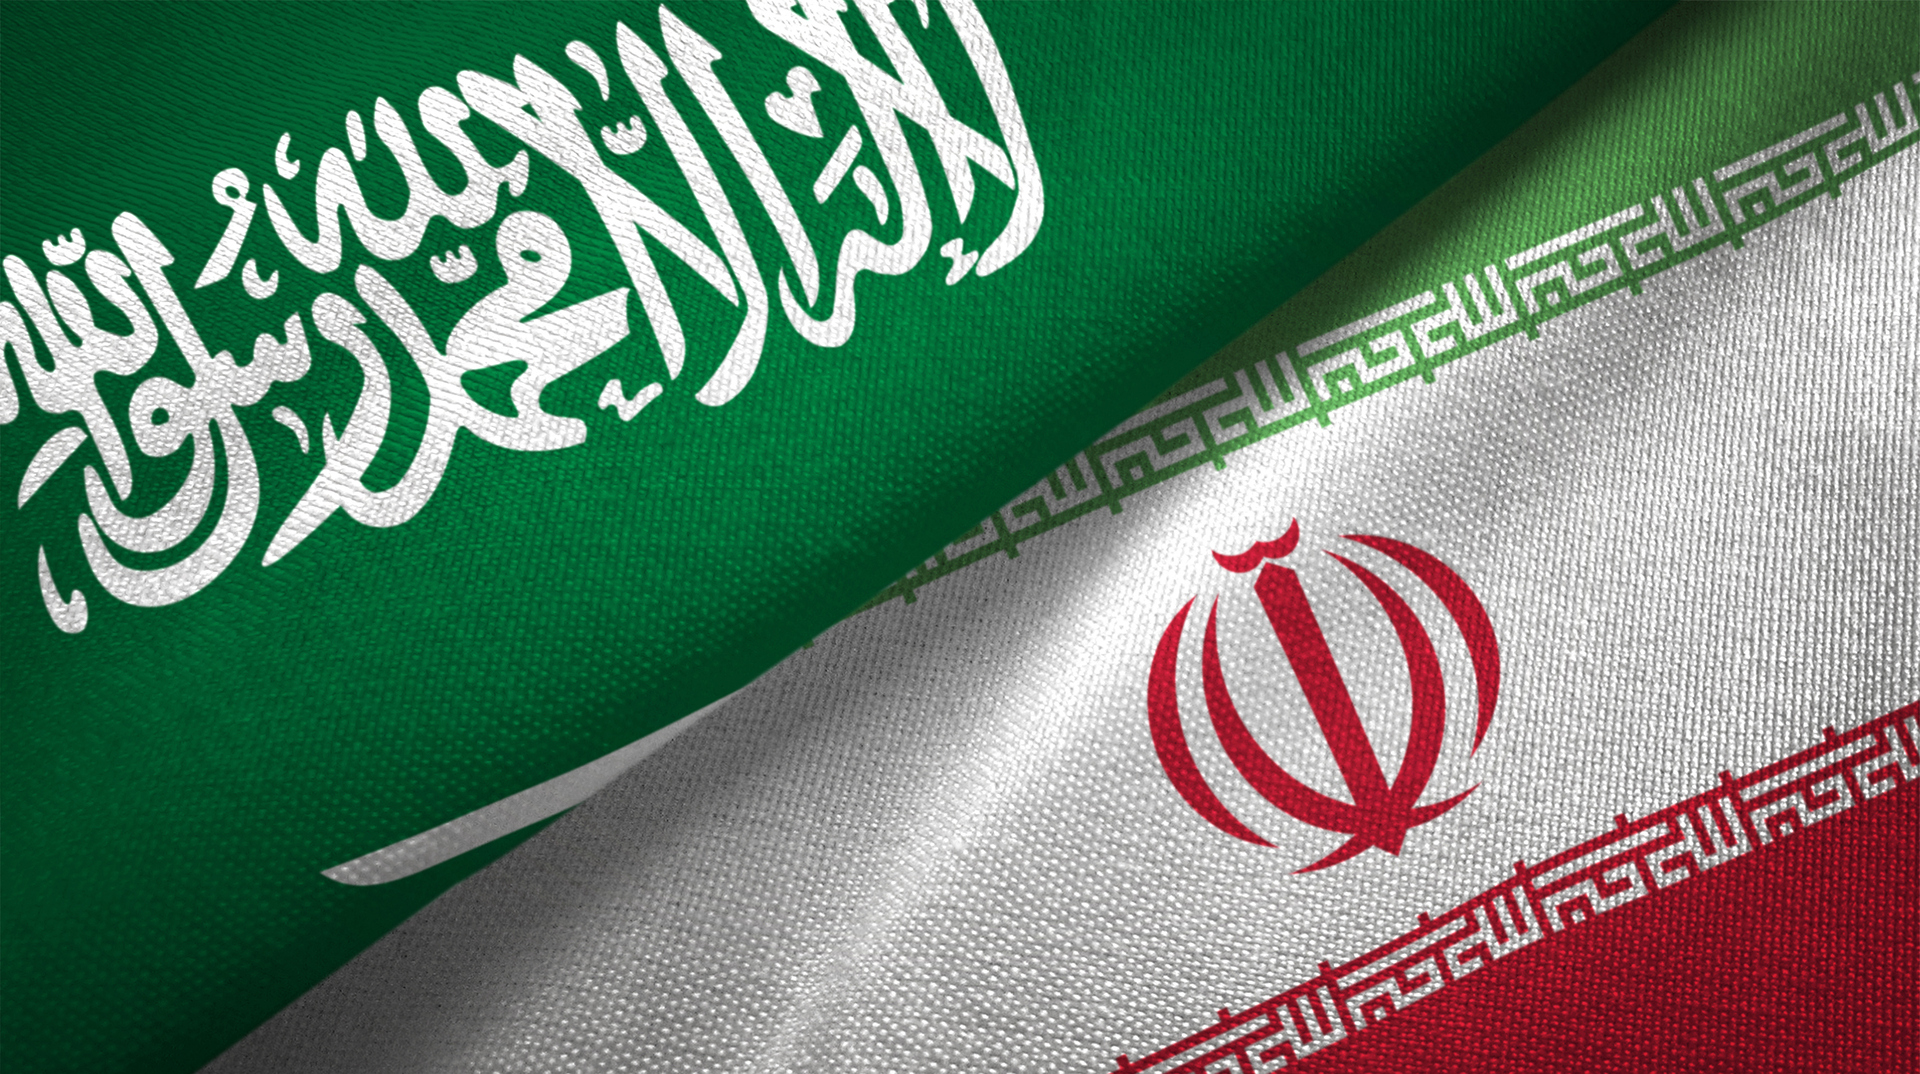 إيران تؤكد استعدادها لتعزيز العلاقات مع السعودية أمنيا ودفاعيا وتبعث رسالة لوزير دفاعها